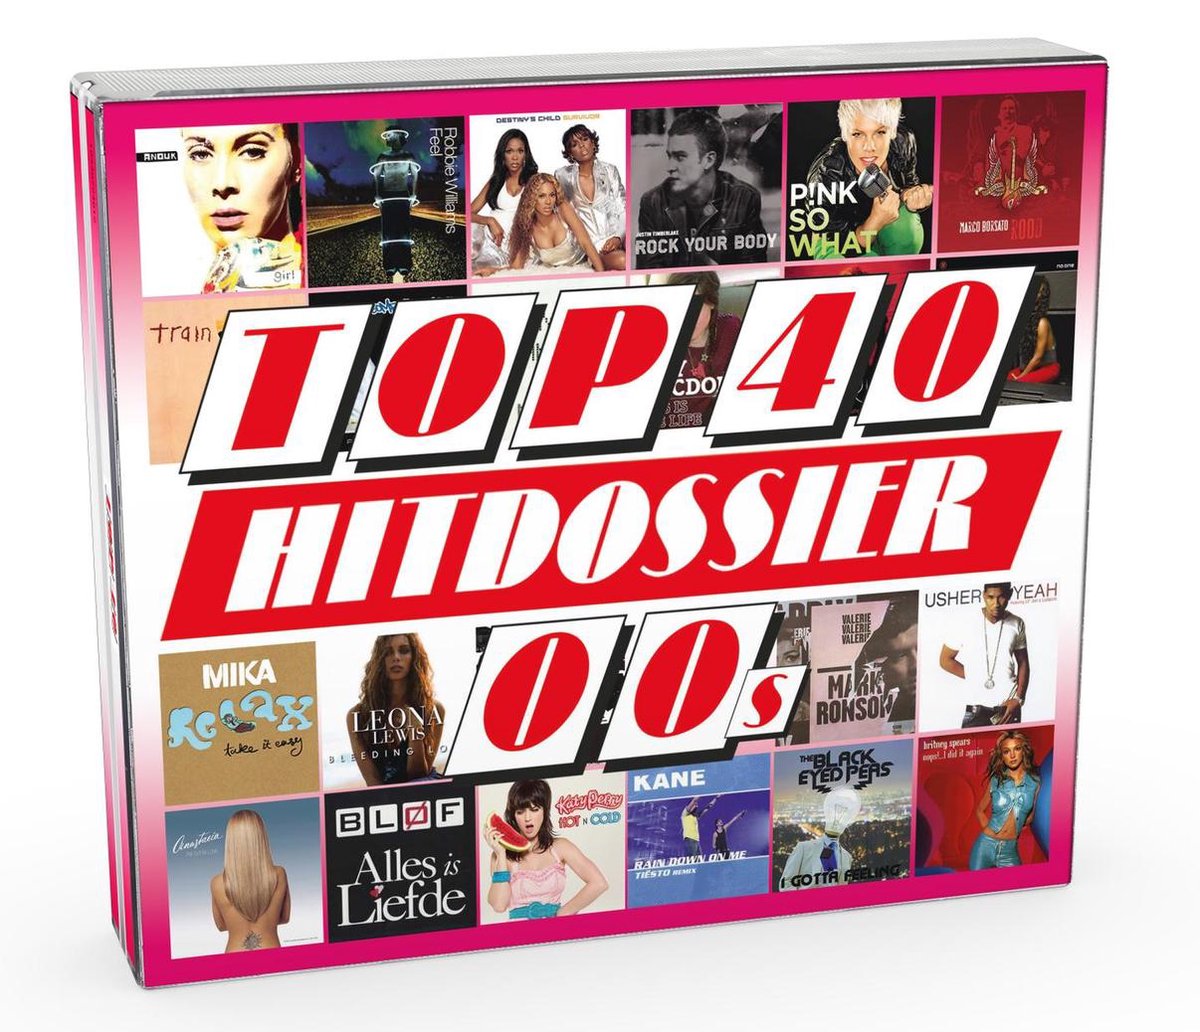 Top 40 Hitdossier - 00's - V/a